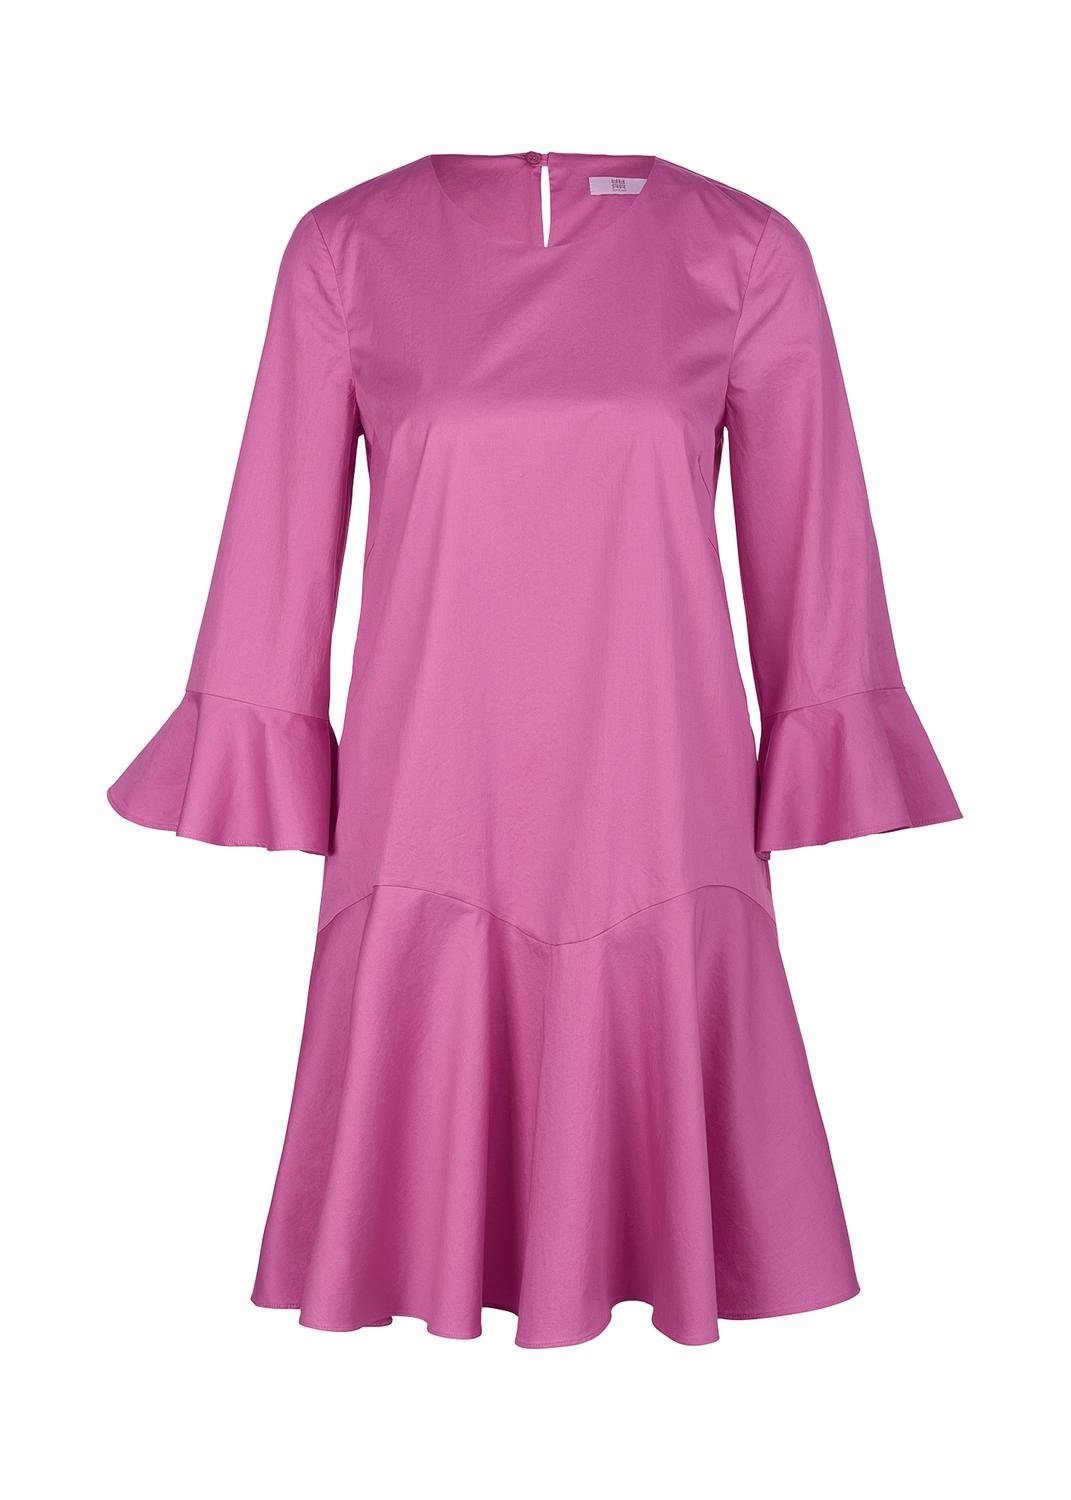 Riani Sommerkleid Kleid, pink cosmic